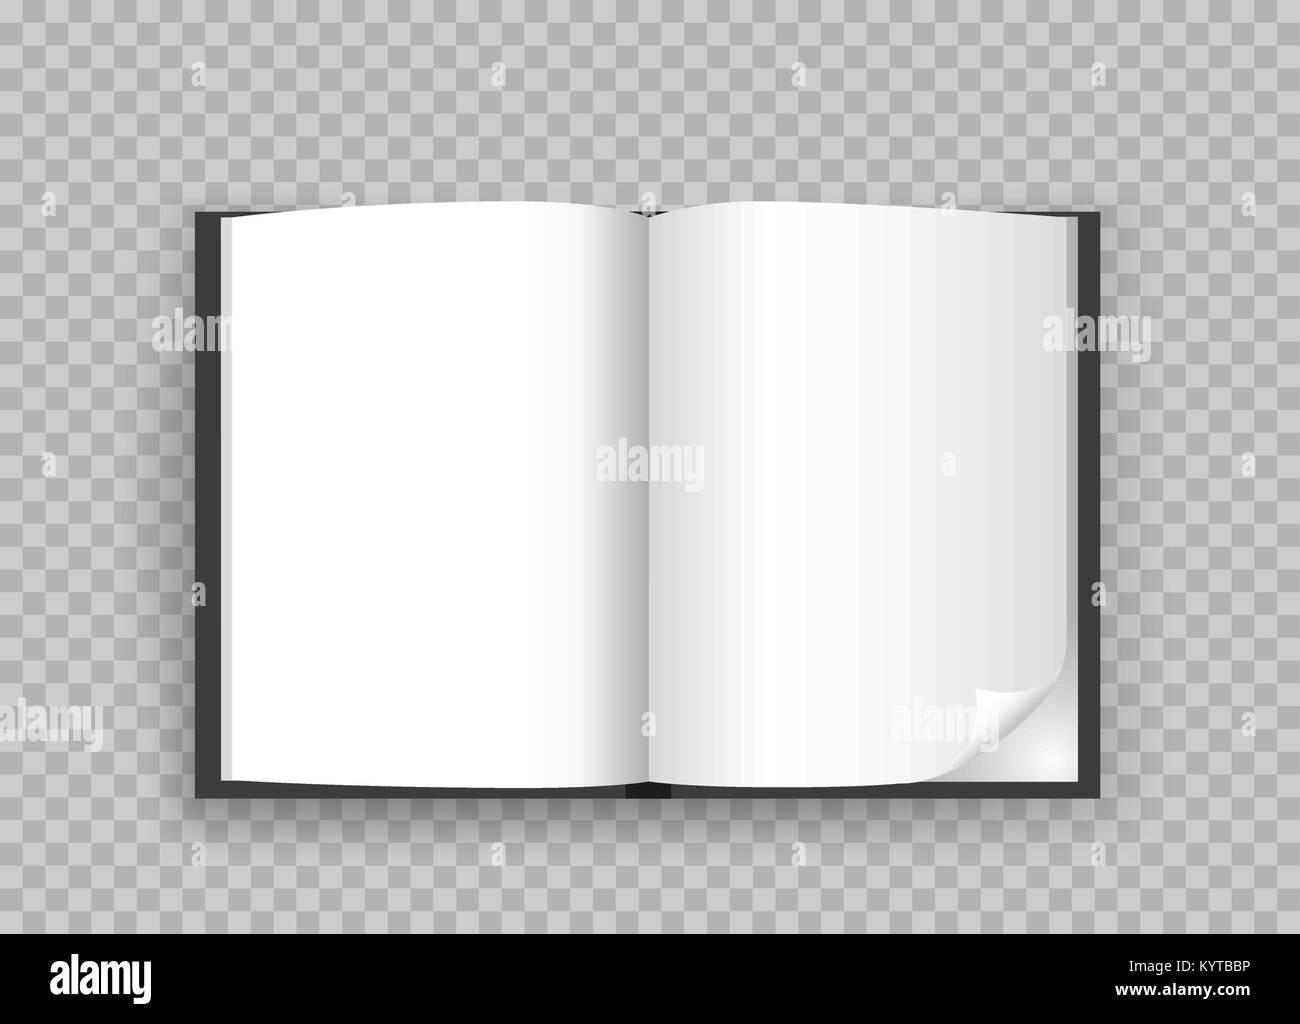 Offenes Buch Vorlage Transparenter Hintergrund Stock Vektorgrafik Alamy